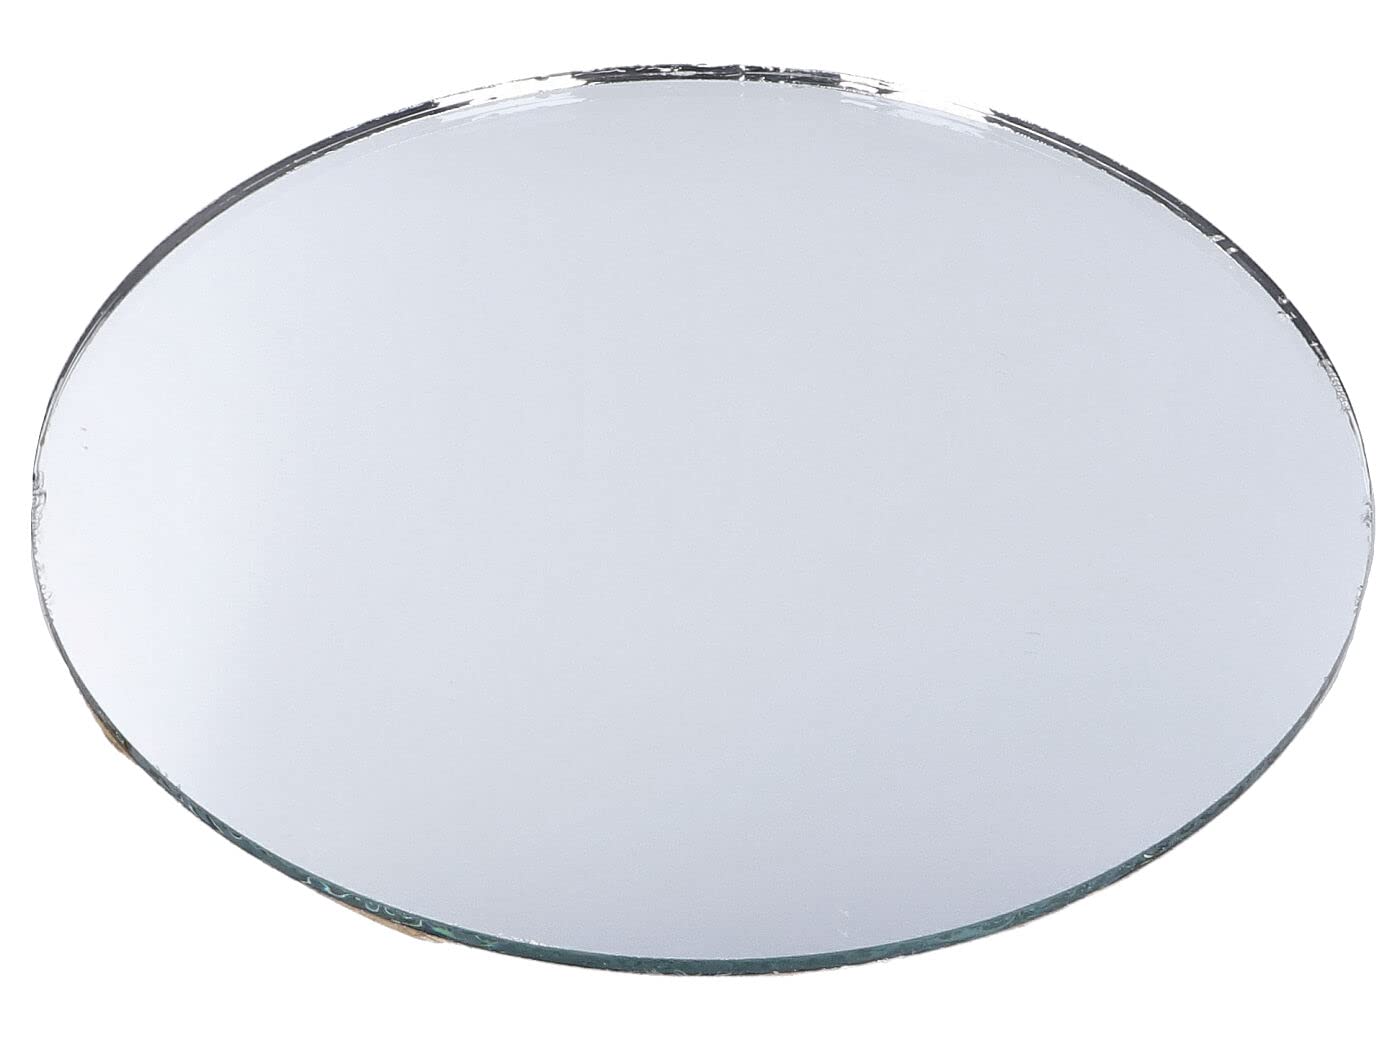 Spiegelglas 95mm für Simson S50, S51, S53, S70, S83, SR50, SR80, KR51/1, KR51/2, SR4-1, SR4-2, SR4-3, SR4-4 von BESTPRICE